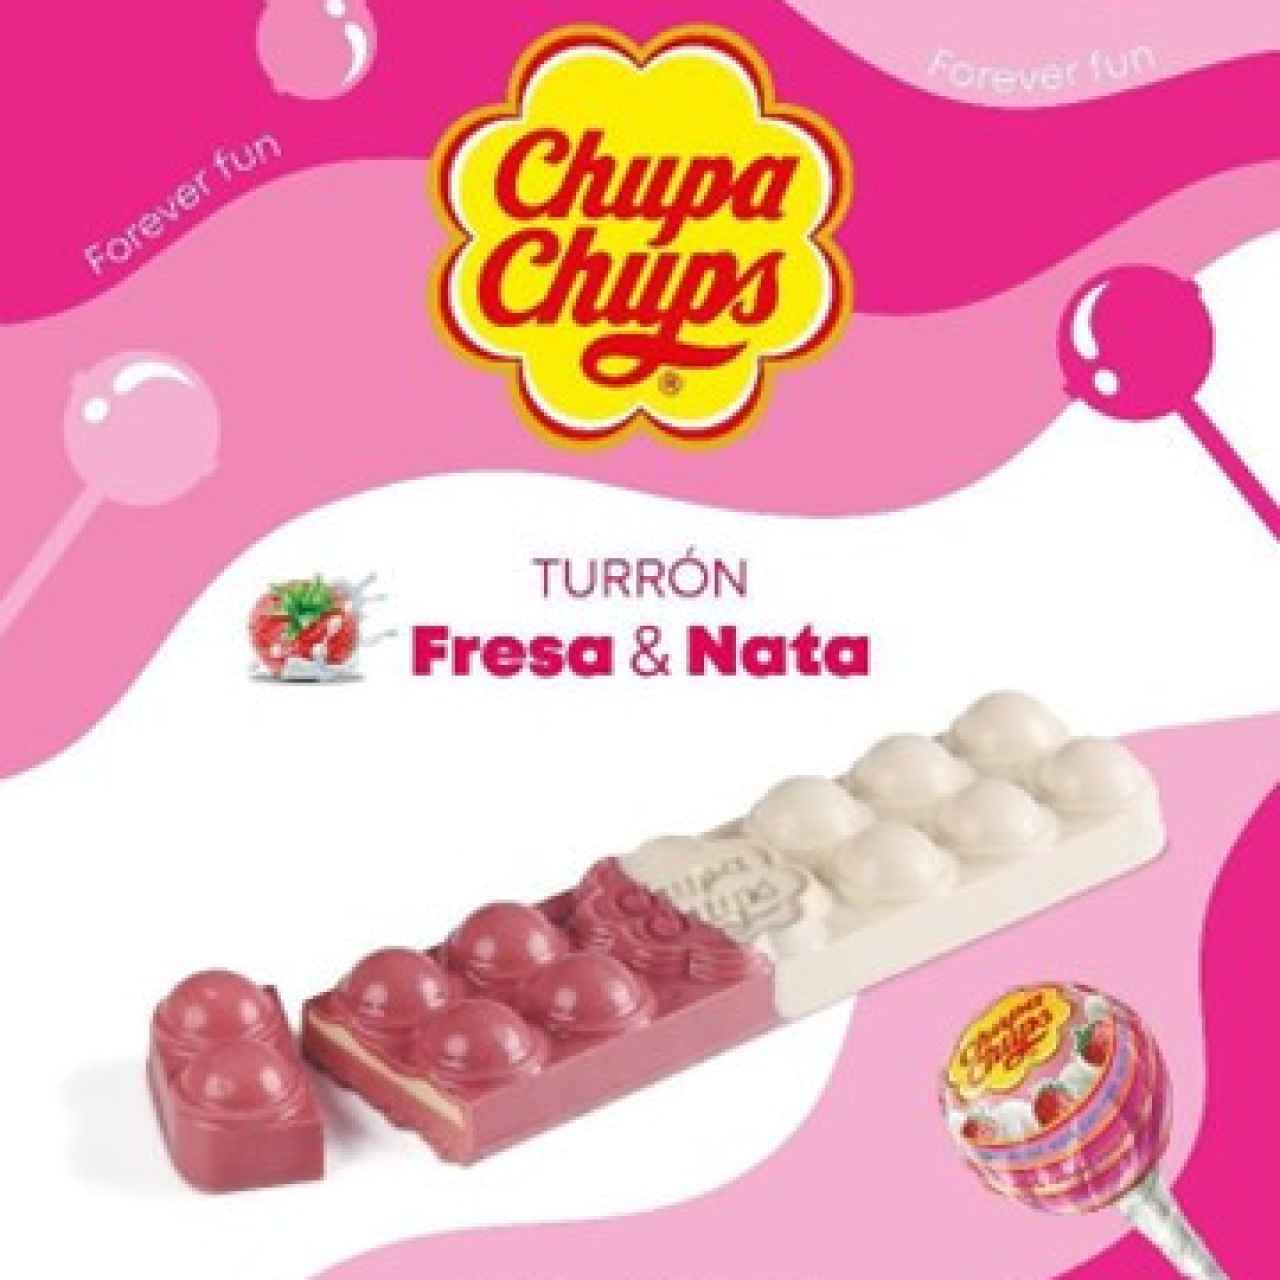 La tableta de turrón de Chupa Chups® simula las formas esféricas del popular caramelo